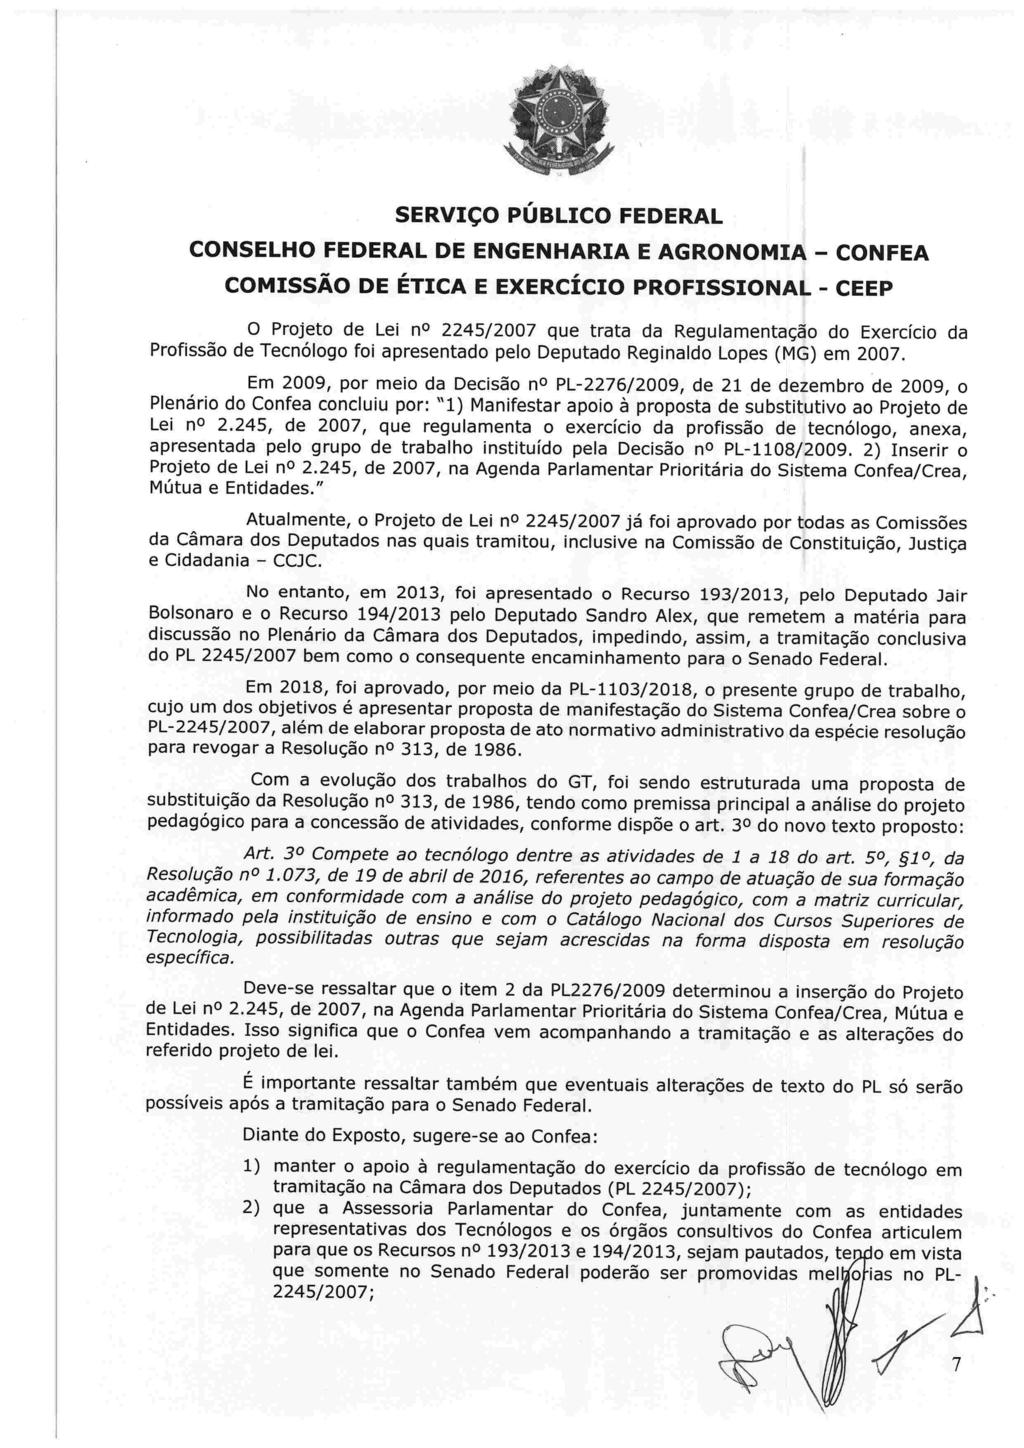 O Projeto de Lei no 2245/2007 que trata da Regulamentação do Exercício da Profissão de Tecnólogo foi apresentado pelo Deputado Reginaldo Lopes (MG) em 2007.